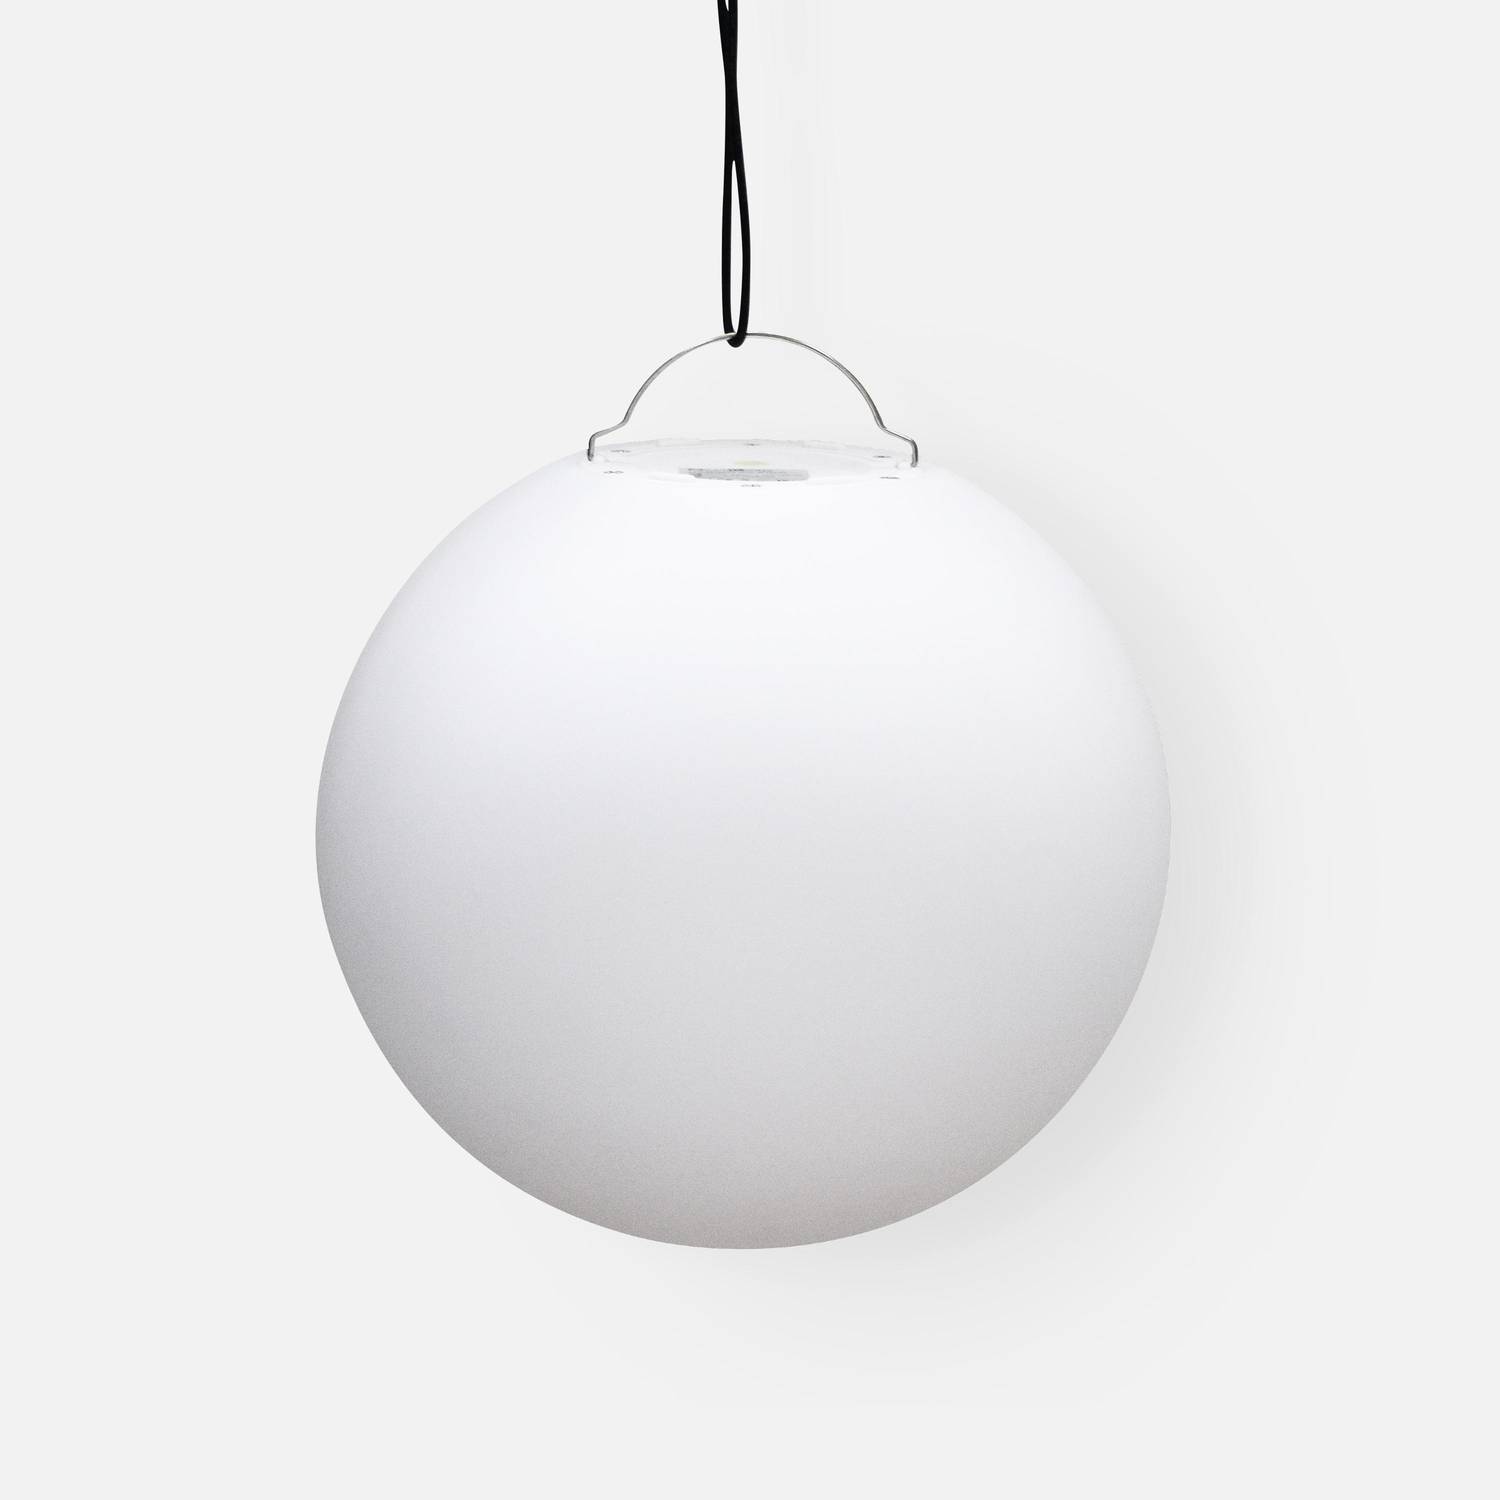 LED-Kugel 60cm - Dekorative Leuchtkugel, Ø60cm, warmweiß, mit Fernbedienung Photo4